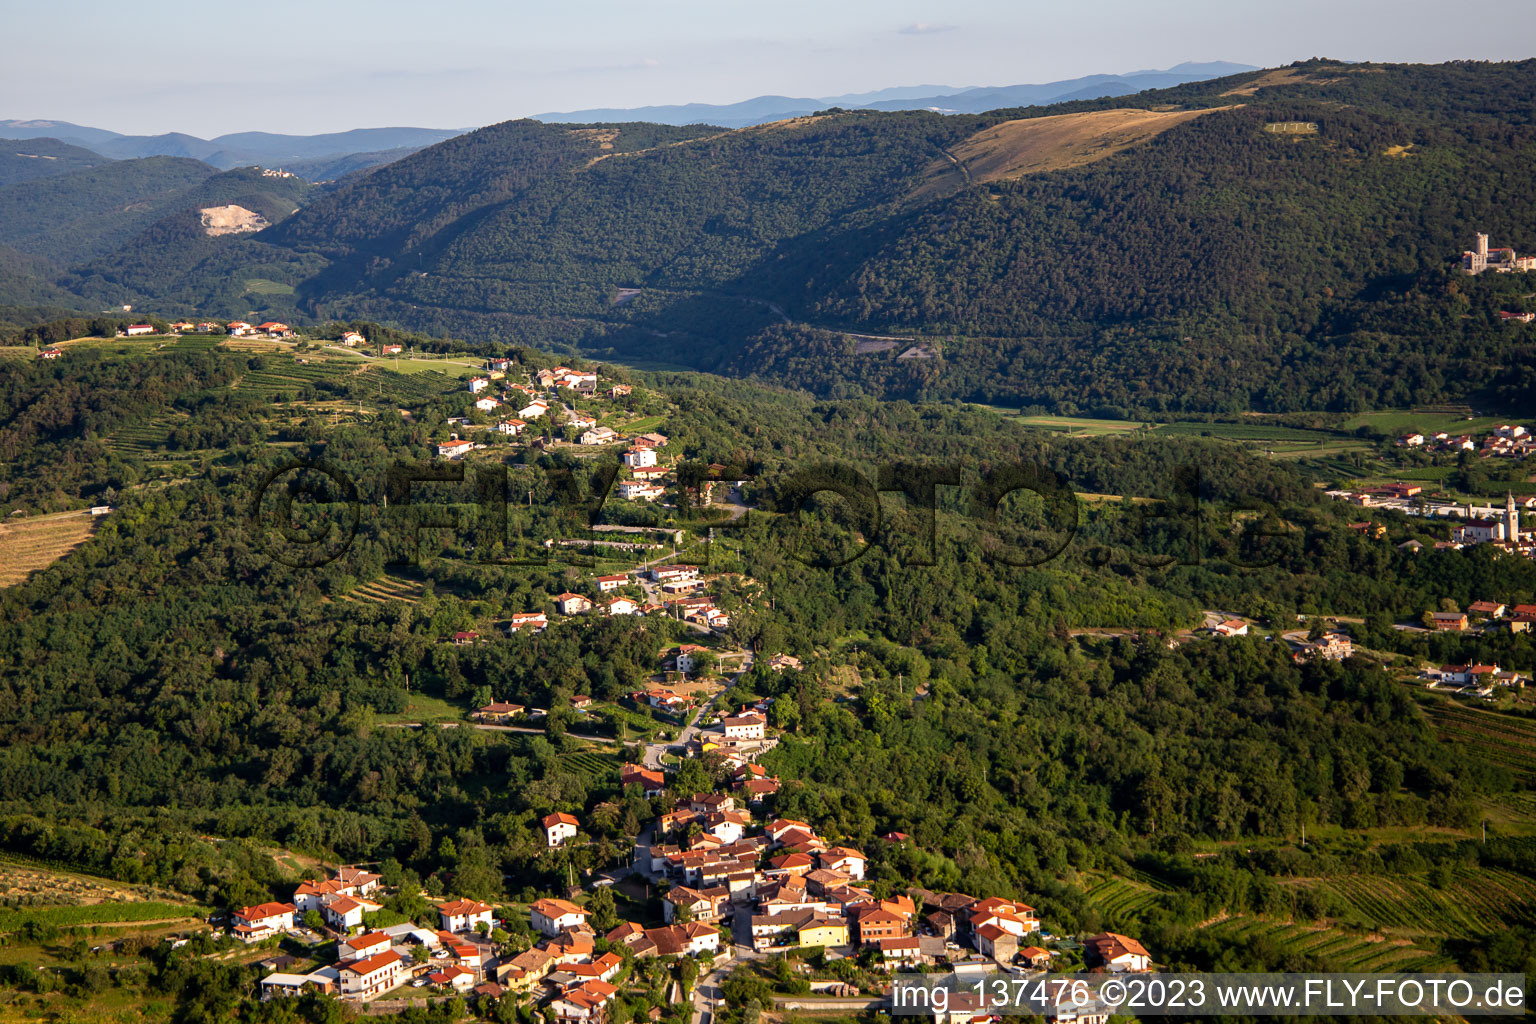 Luftbild von Ortsteil Preserje in Nova Gorica, Slowenien